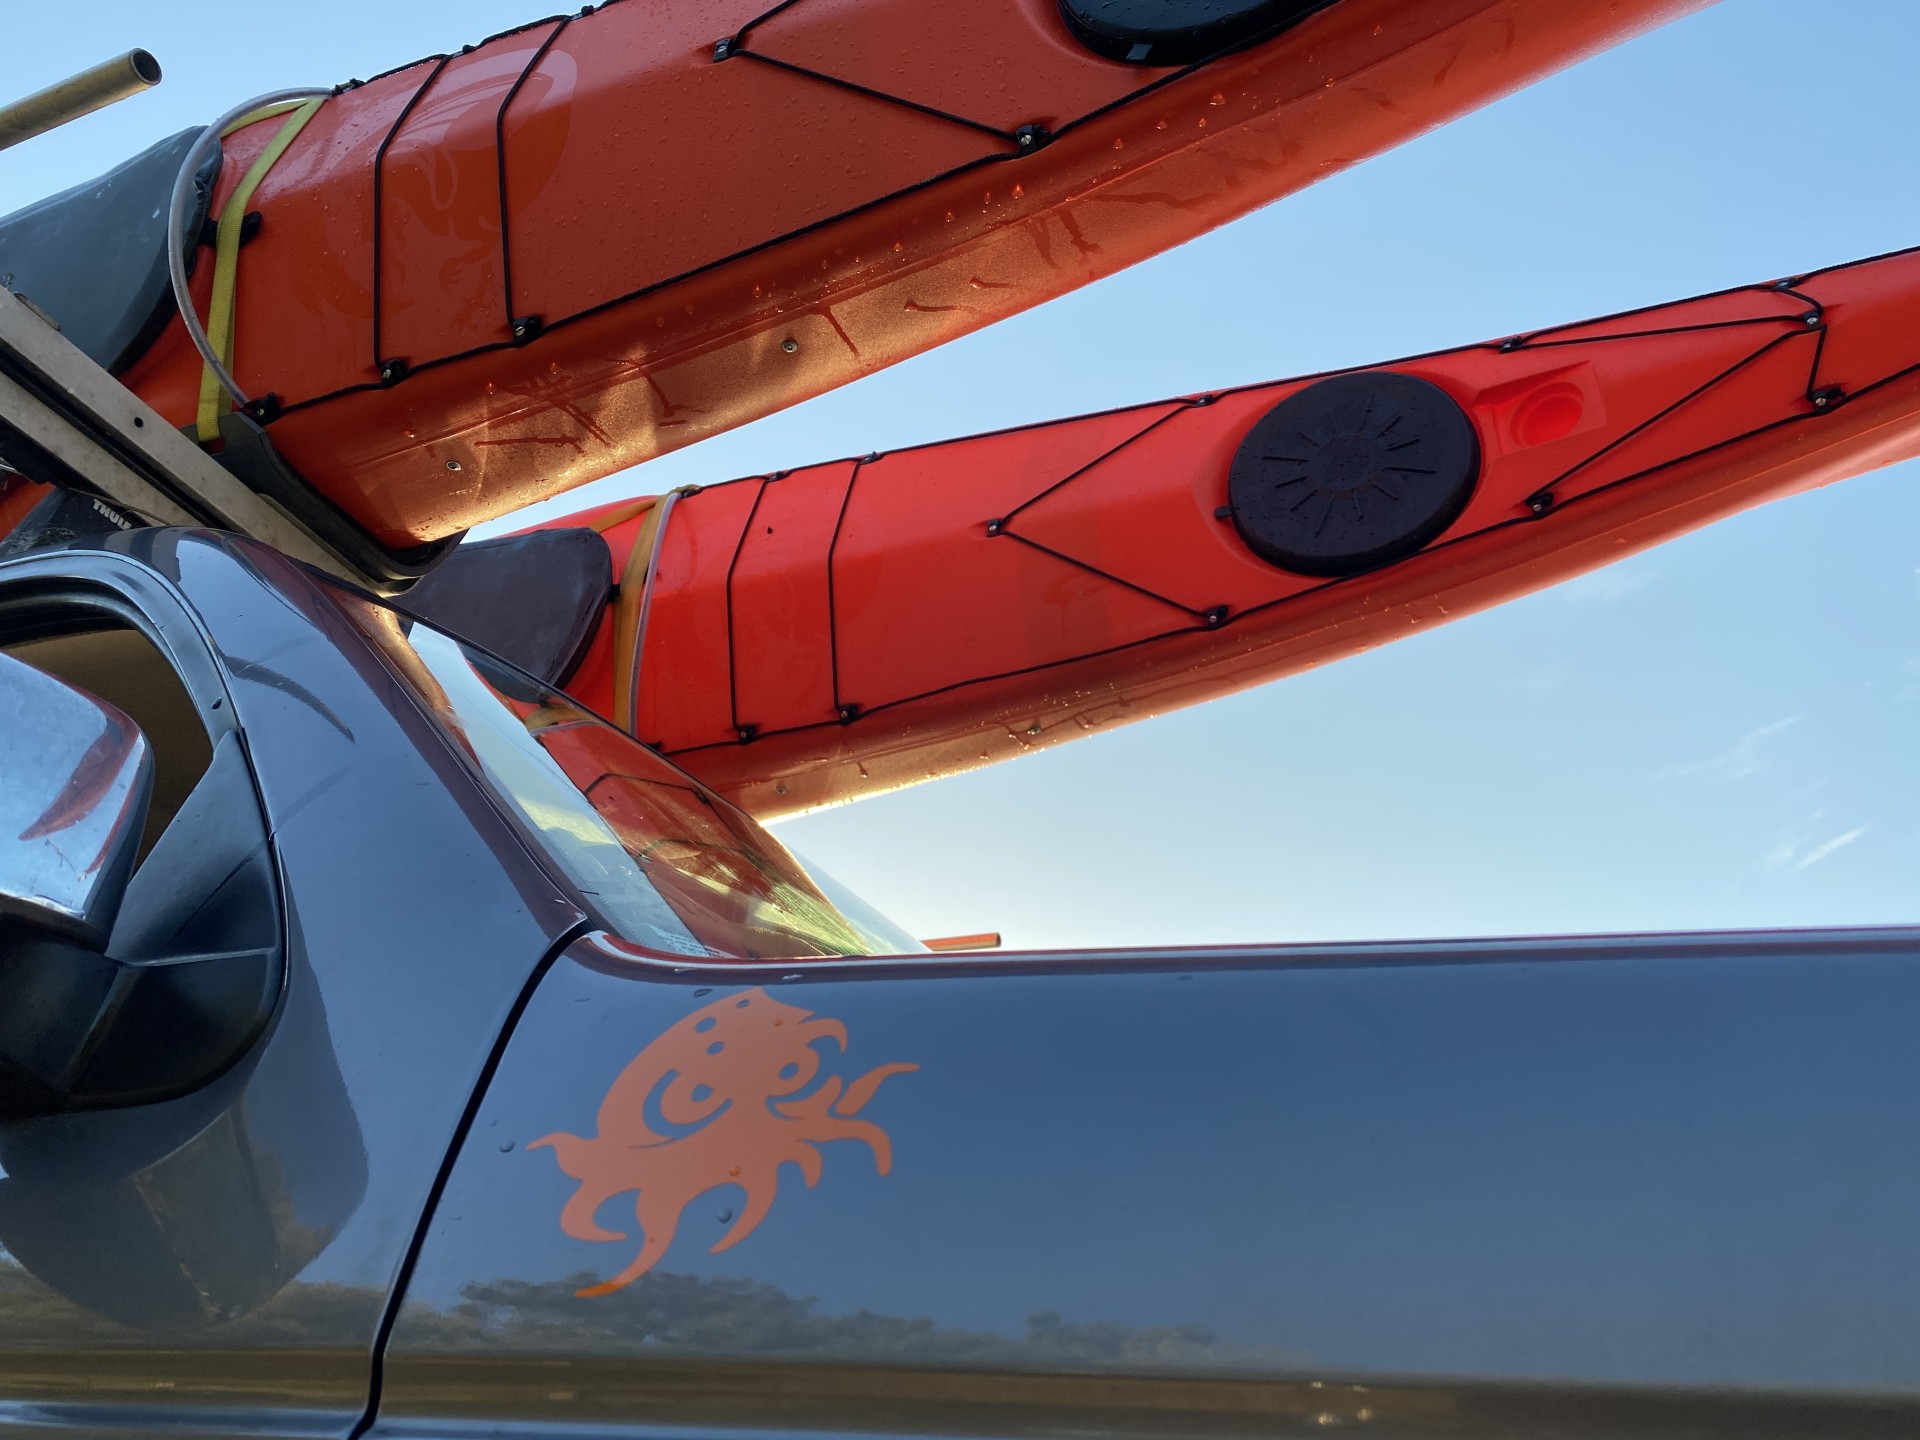 Orange sea kayaks on a roofrack.